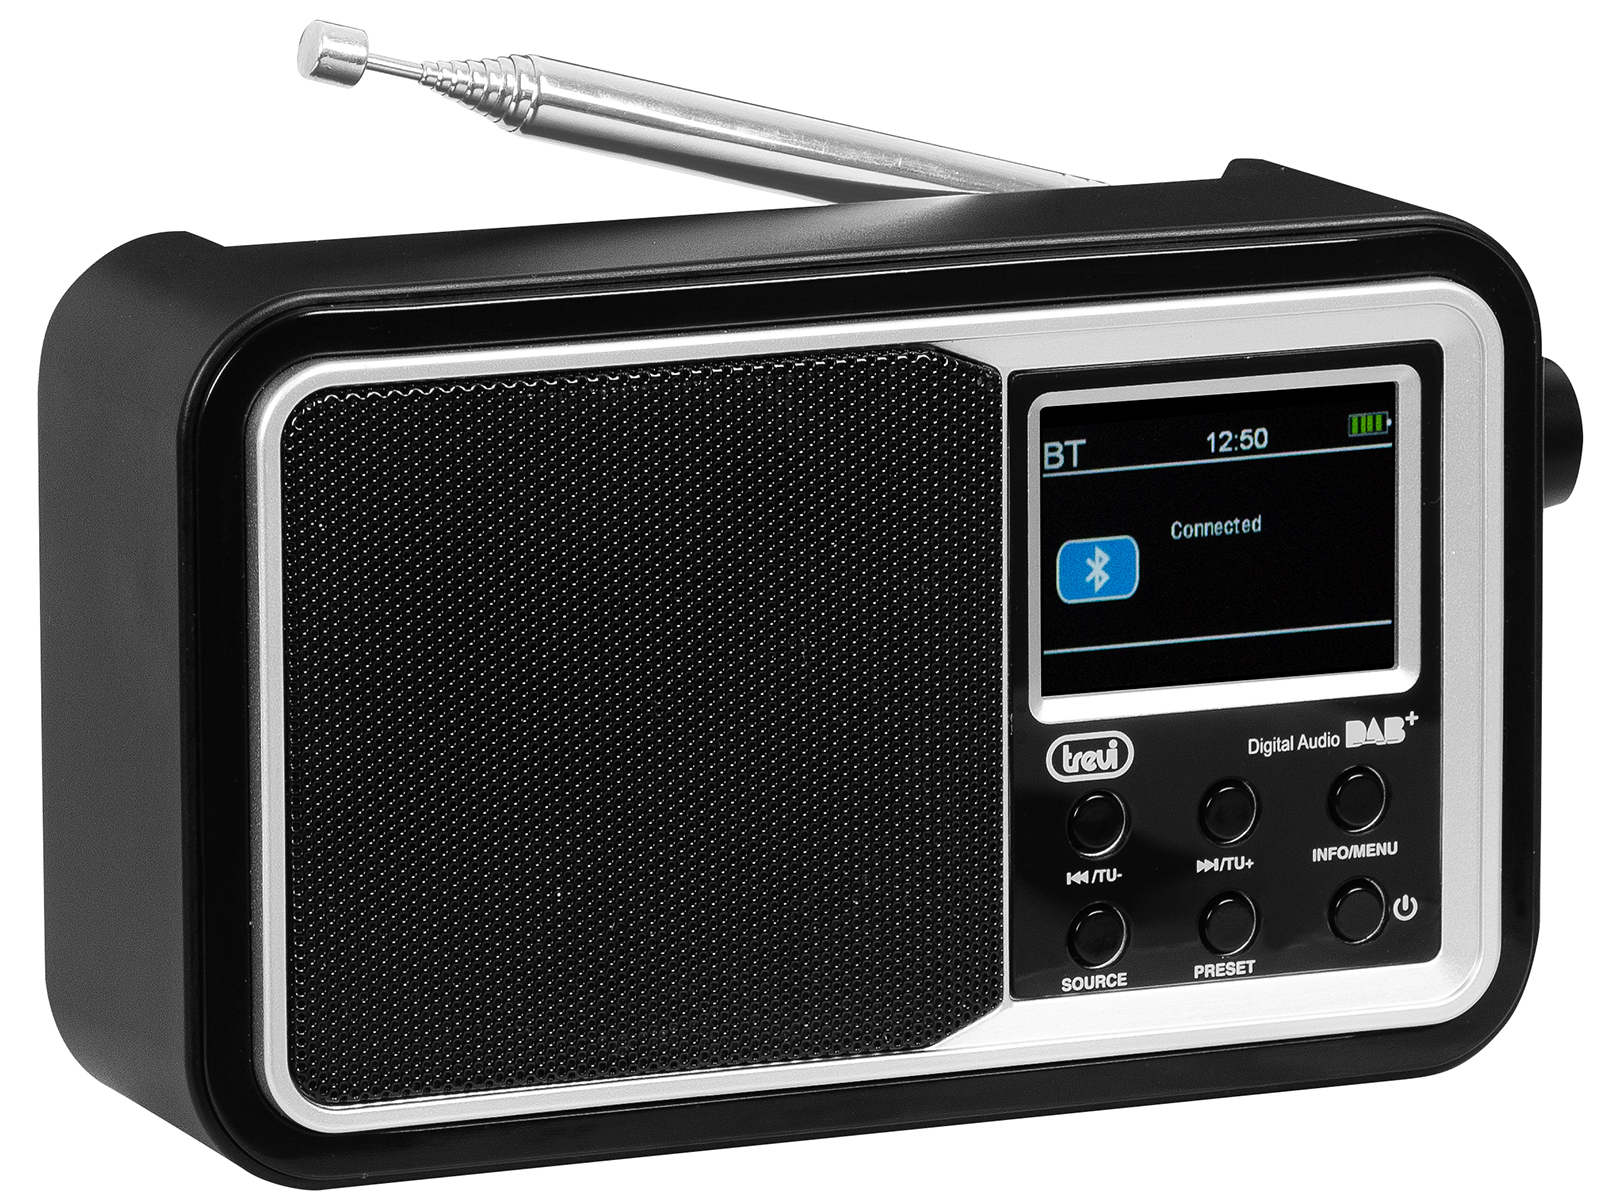 Trevi - Radio Portatile con Ricevitore Digitale DAB/DAB+ FM RDS